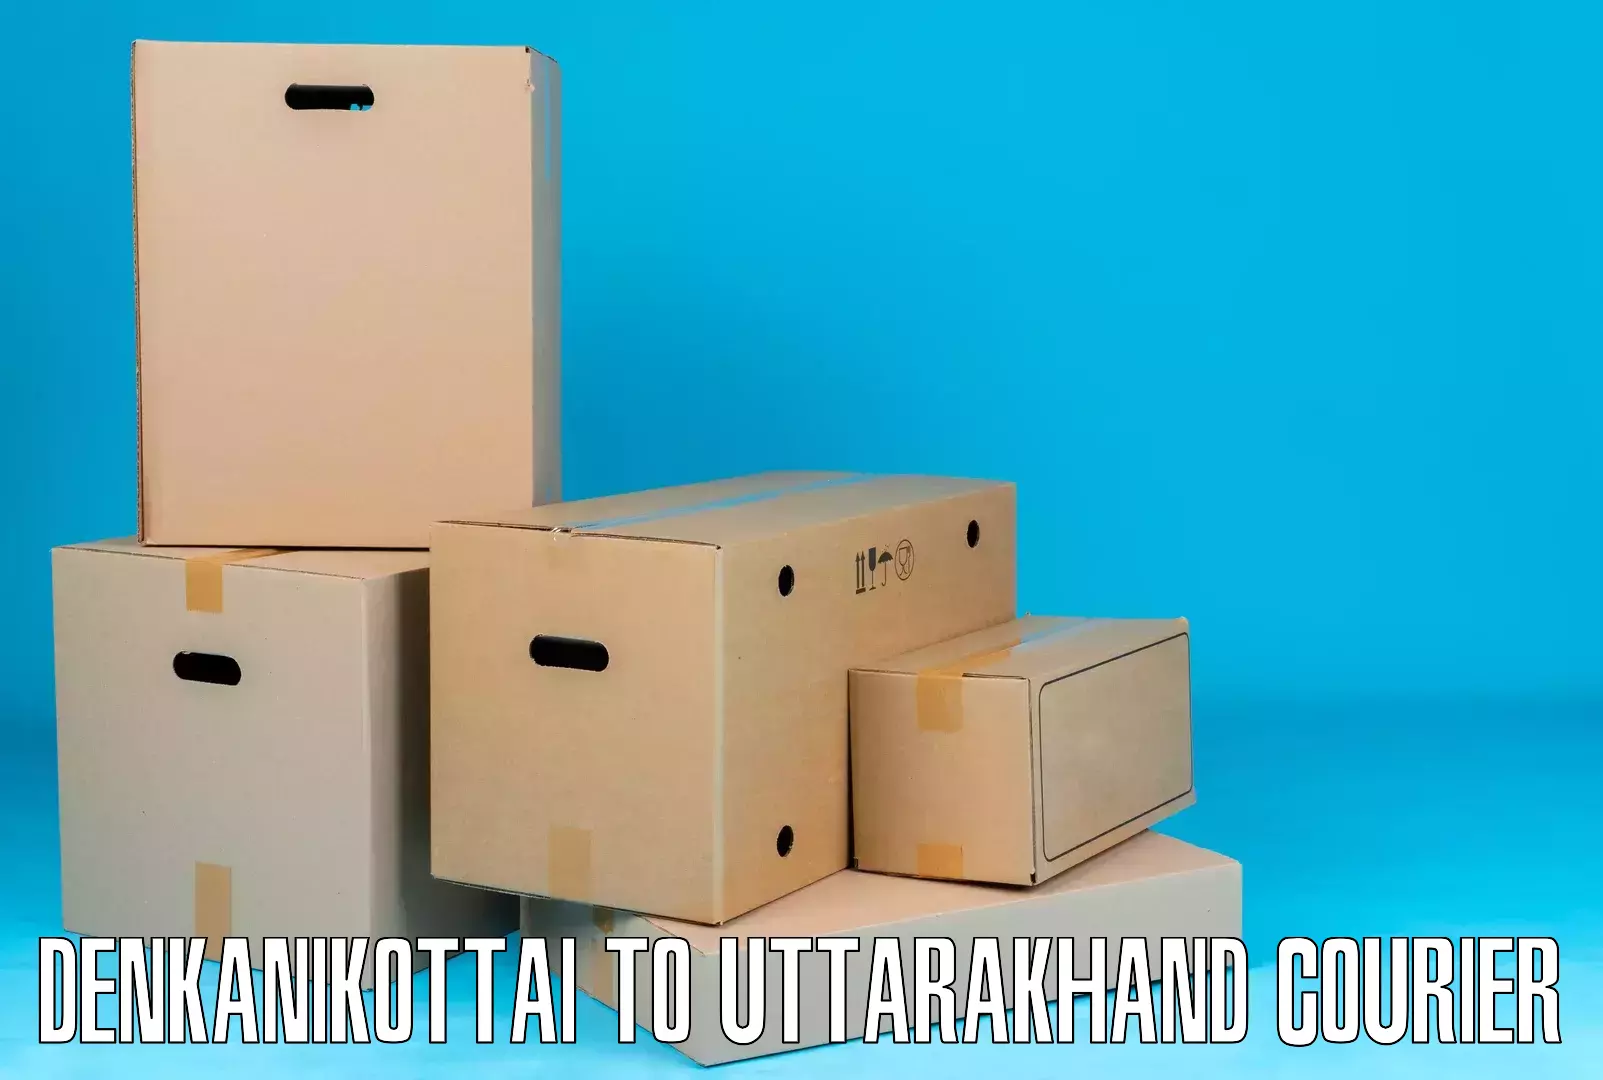 International courier rates Denkanikottai to Uttarkashi